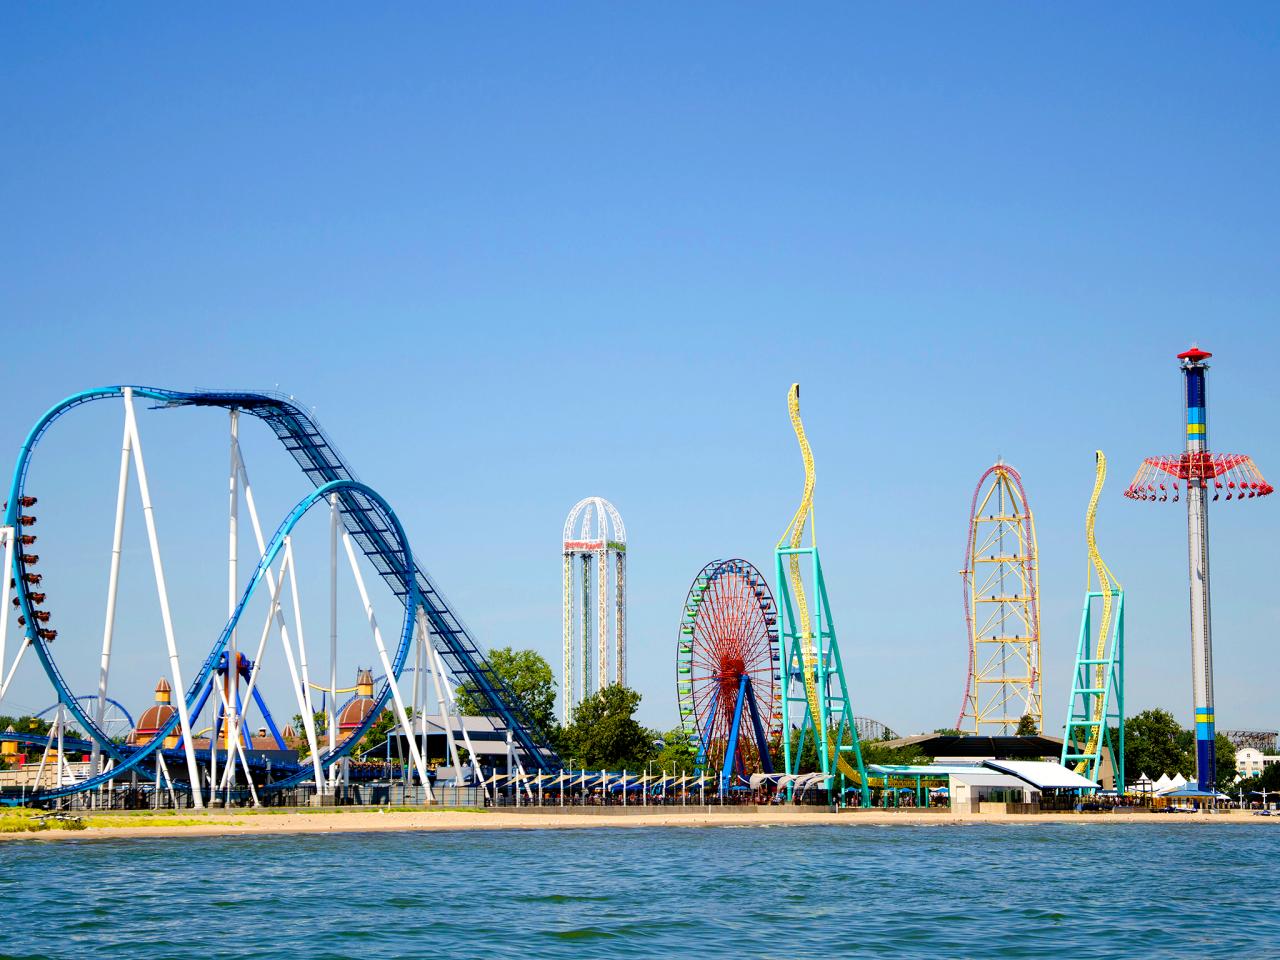 Top 10 Amusement Parks Fans Favorite Theme Parks Travel Channel Travel Channel - roblox fair rides